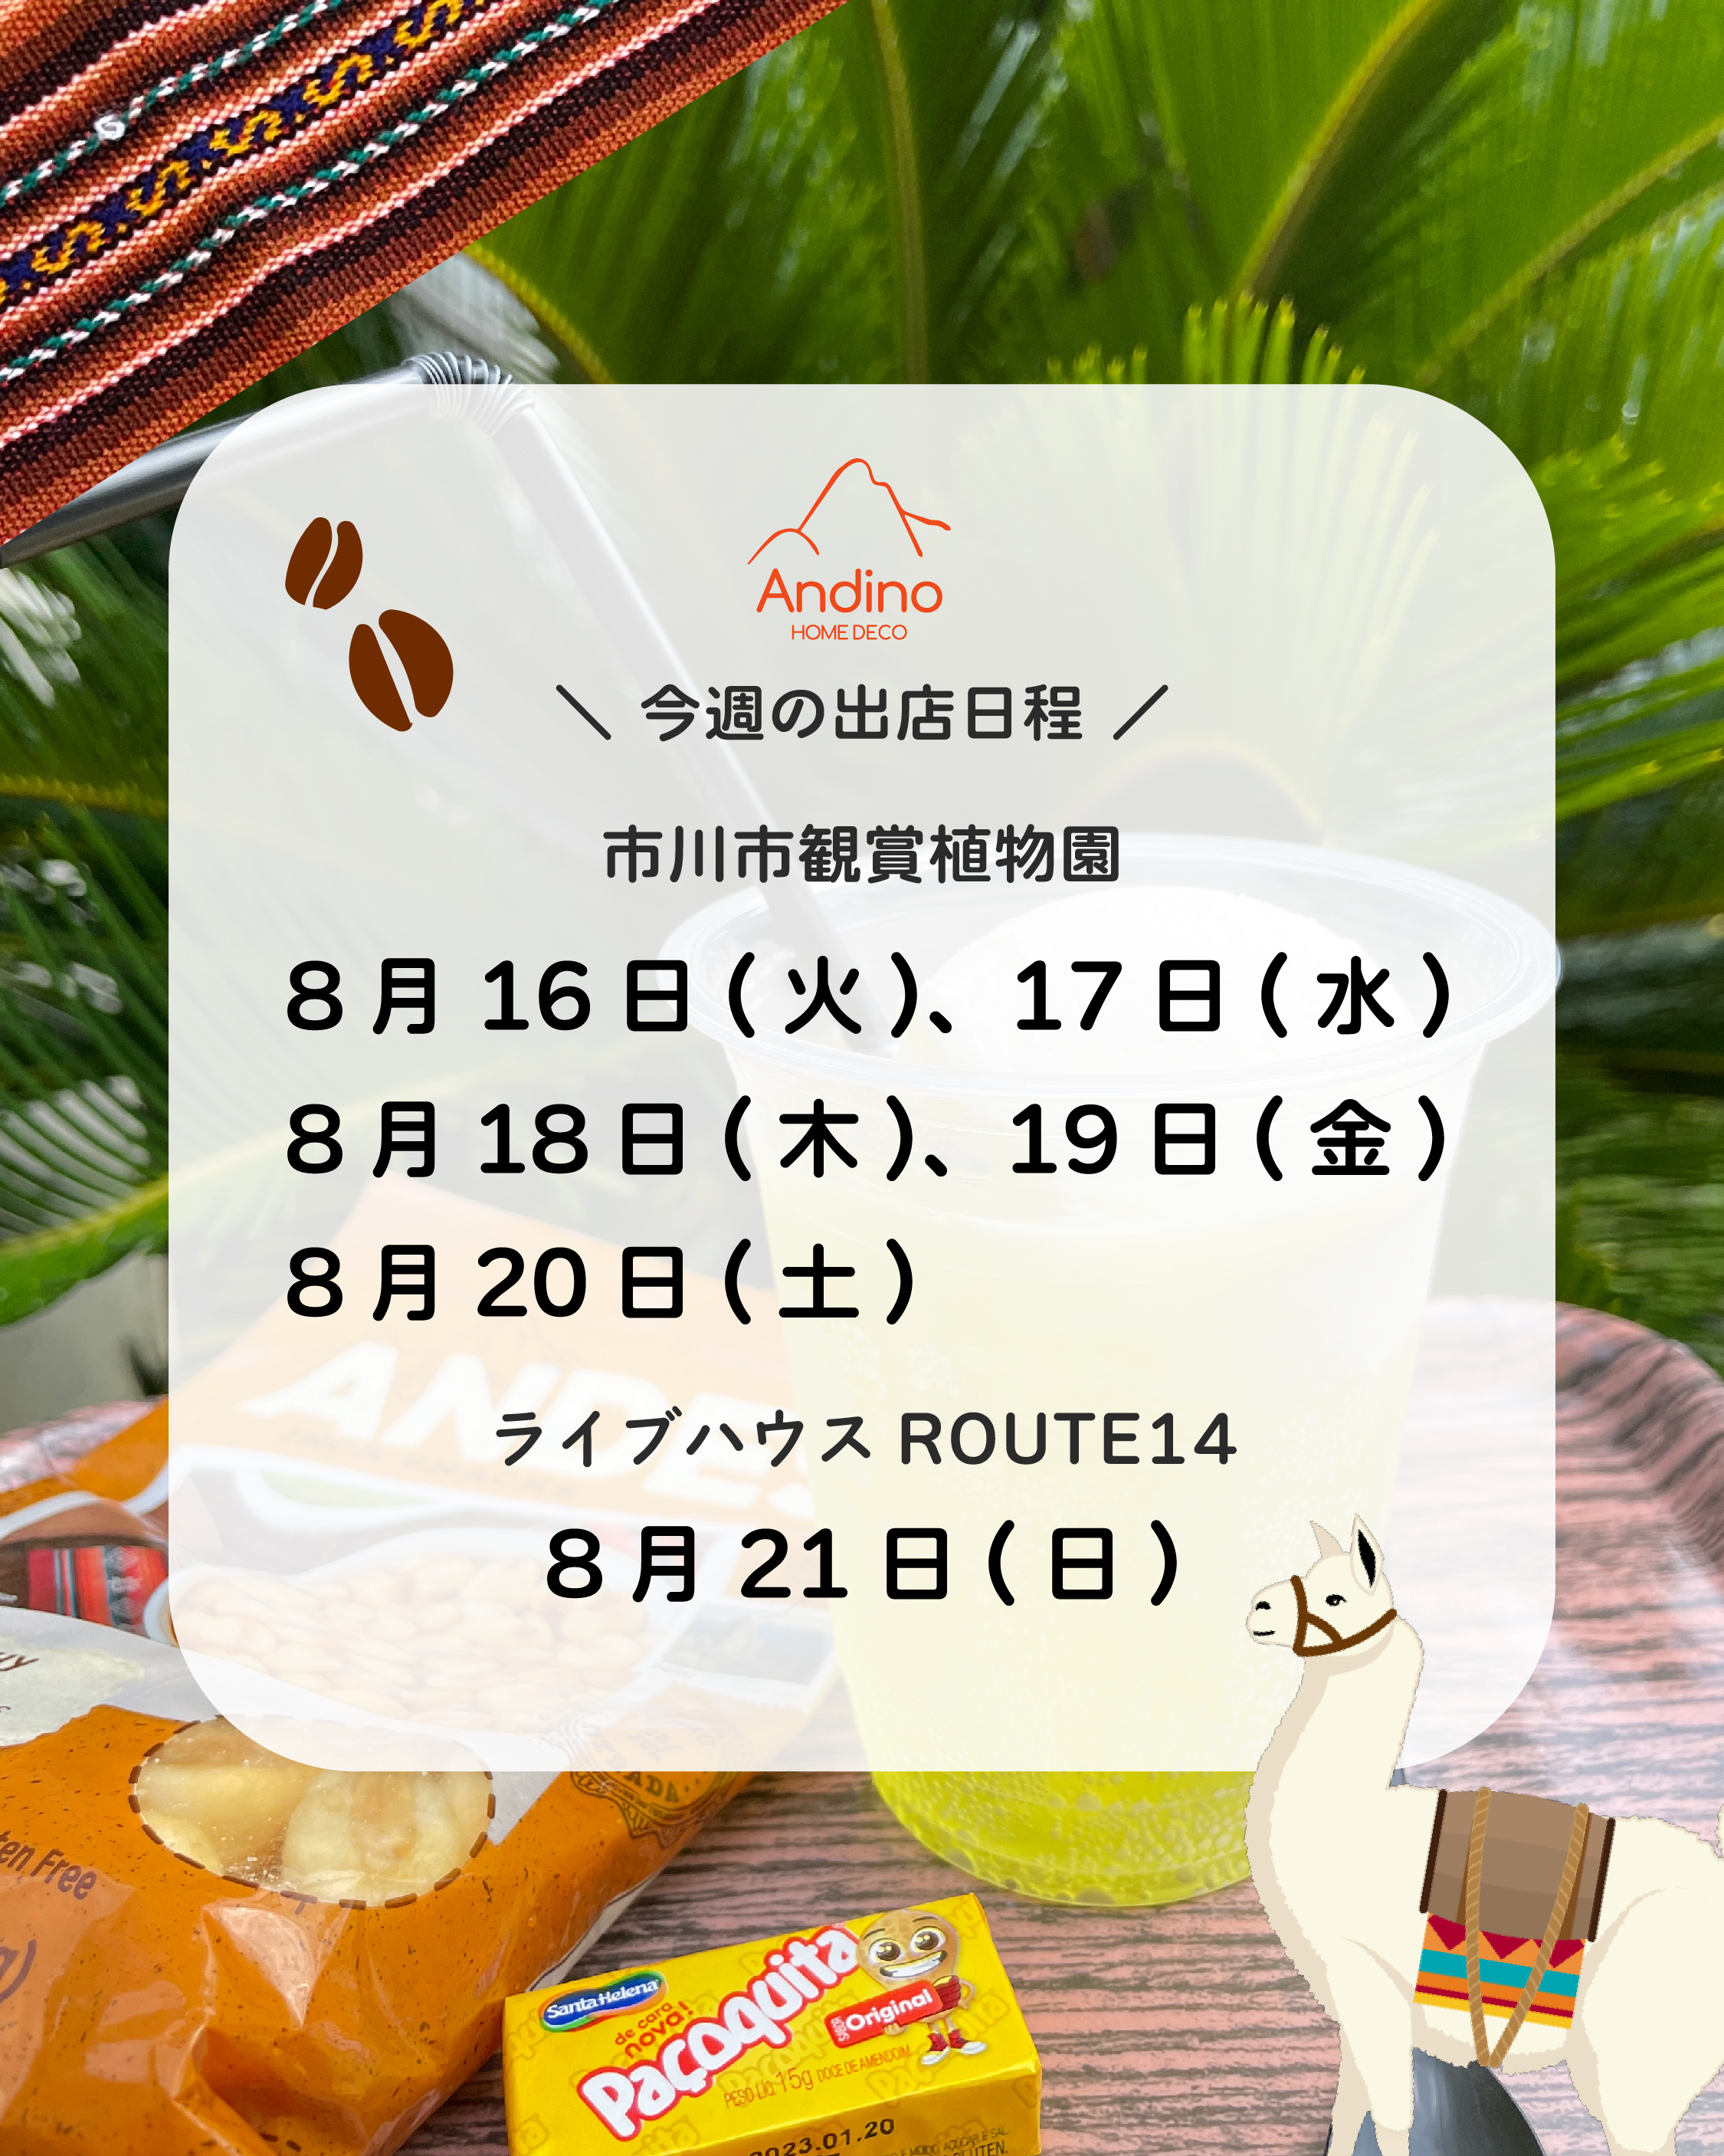 【今週のAndino出店予定日8月16日(火)〜21日(日)】